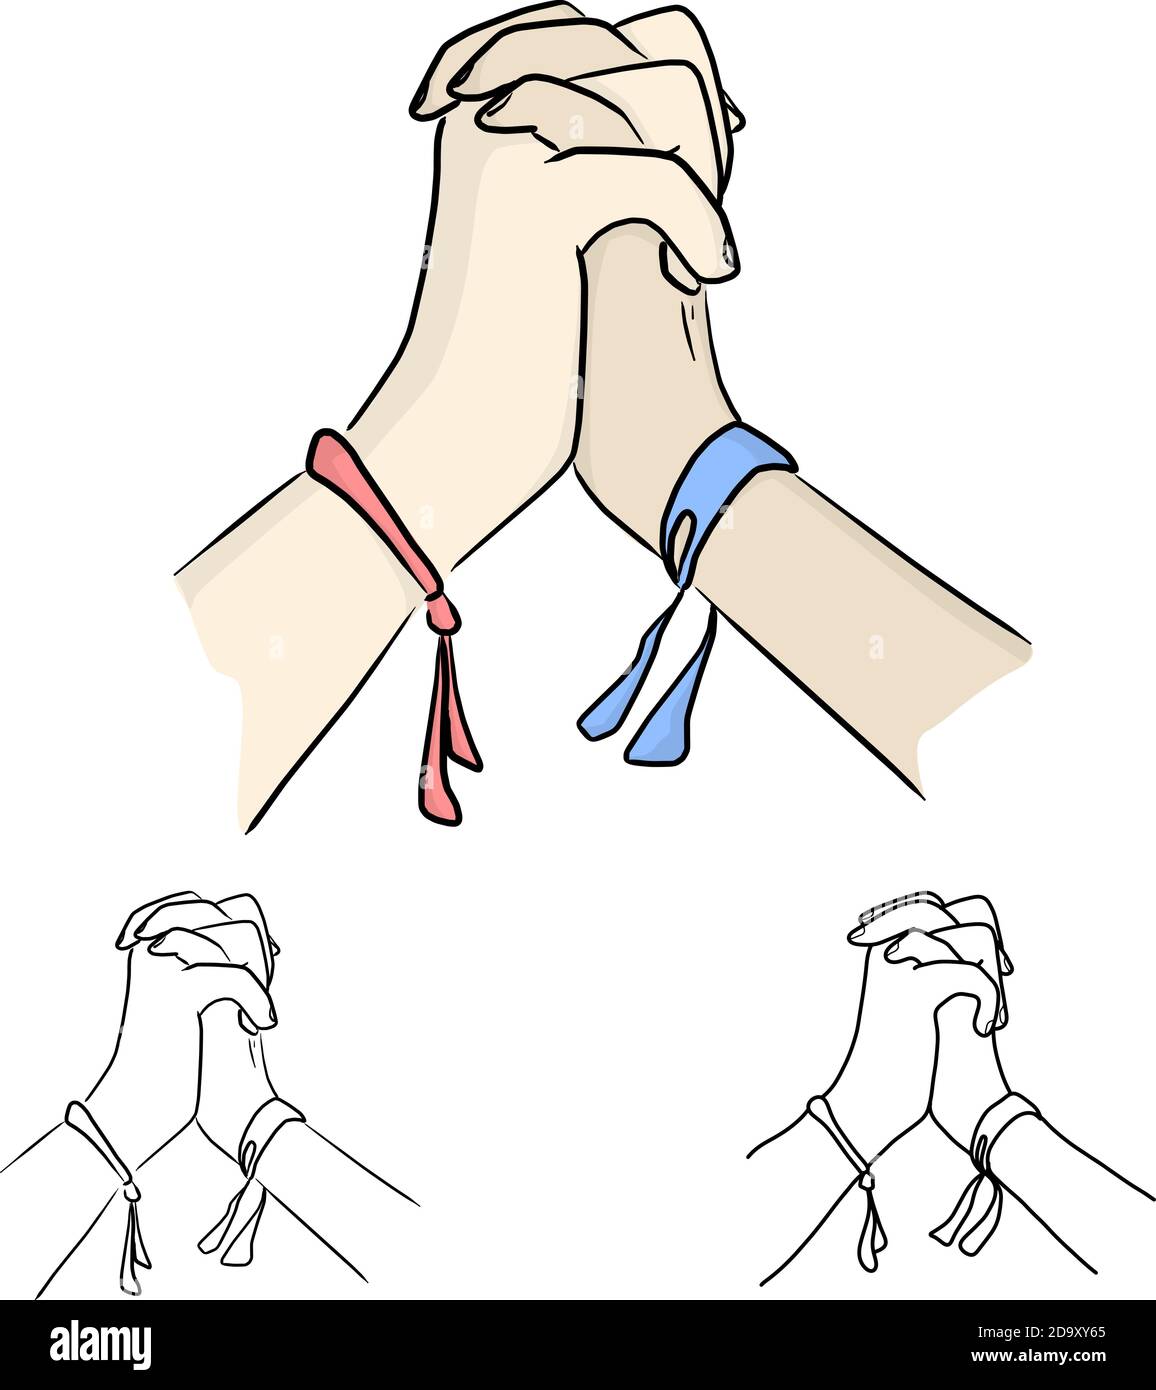 due mani che si tengono l'una l'altra illustrazione vettoriale schizzo doodle mano disegnata con linee nere isolate su sfondo bianco. Concetto aziendale di lavoro di squadra. Illustrazione Vettoriale